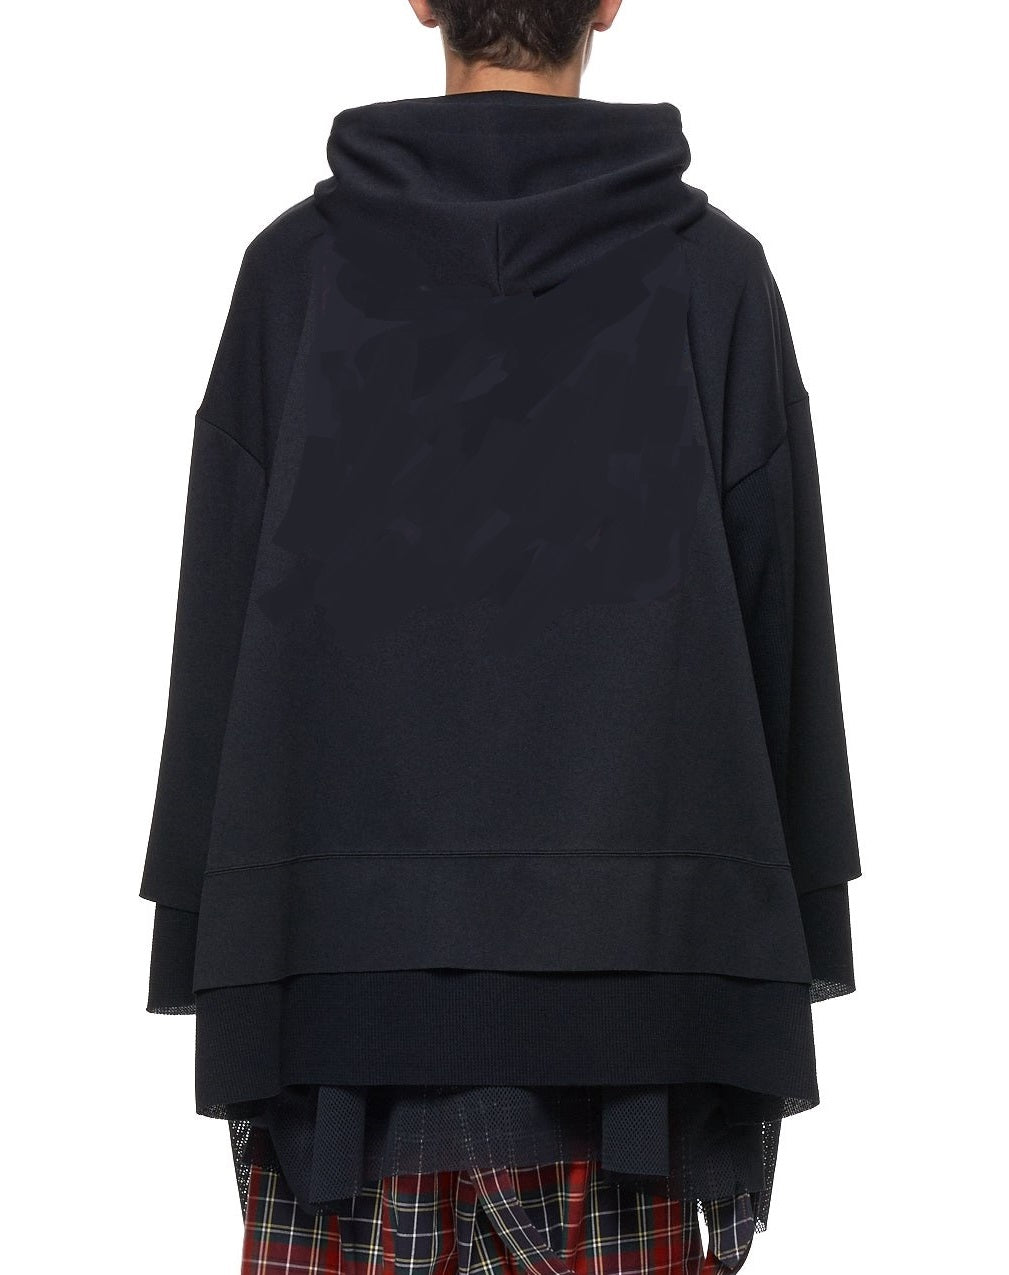 Mesh Hoodie Sweater in Black / Adjustable Hood Layer Over Mesh Triple ...